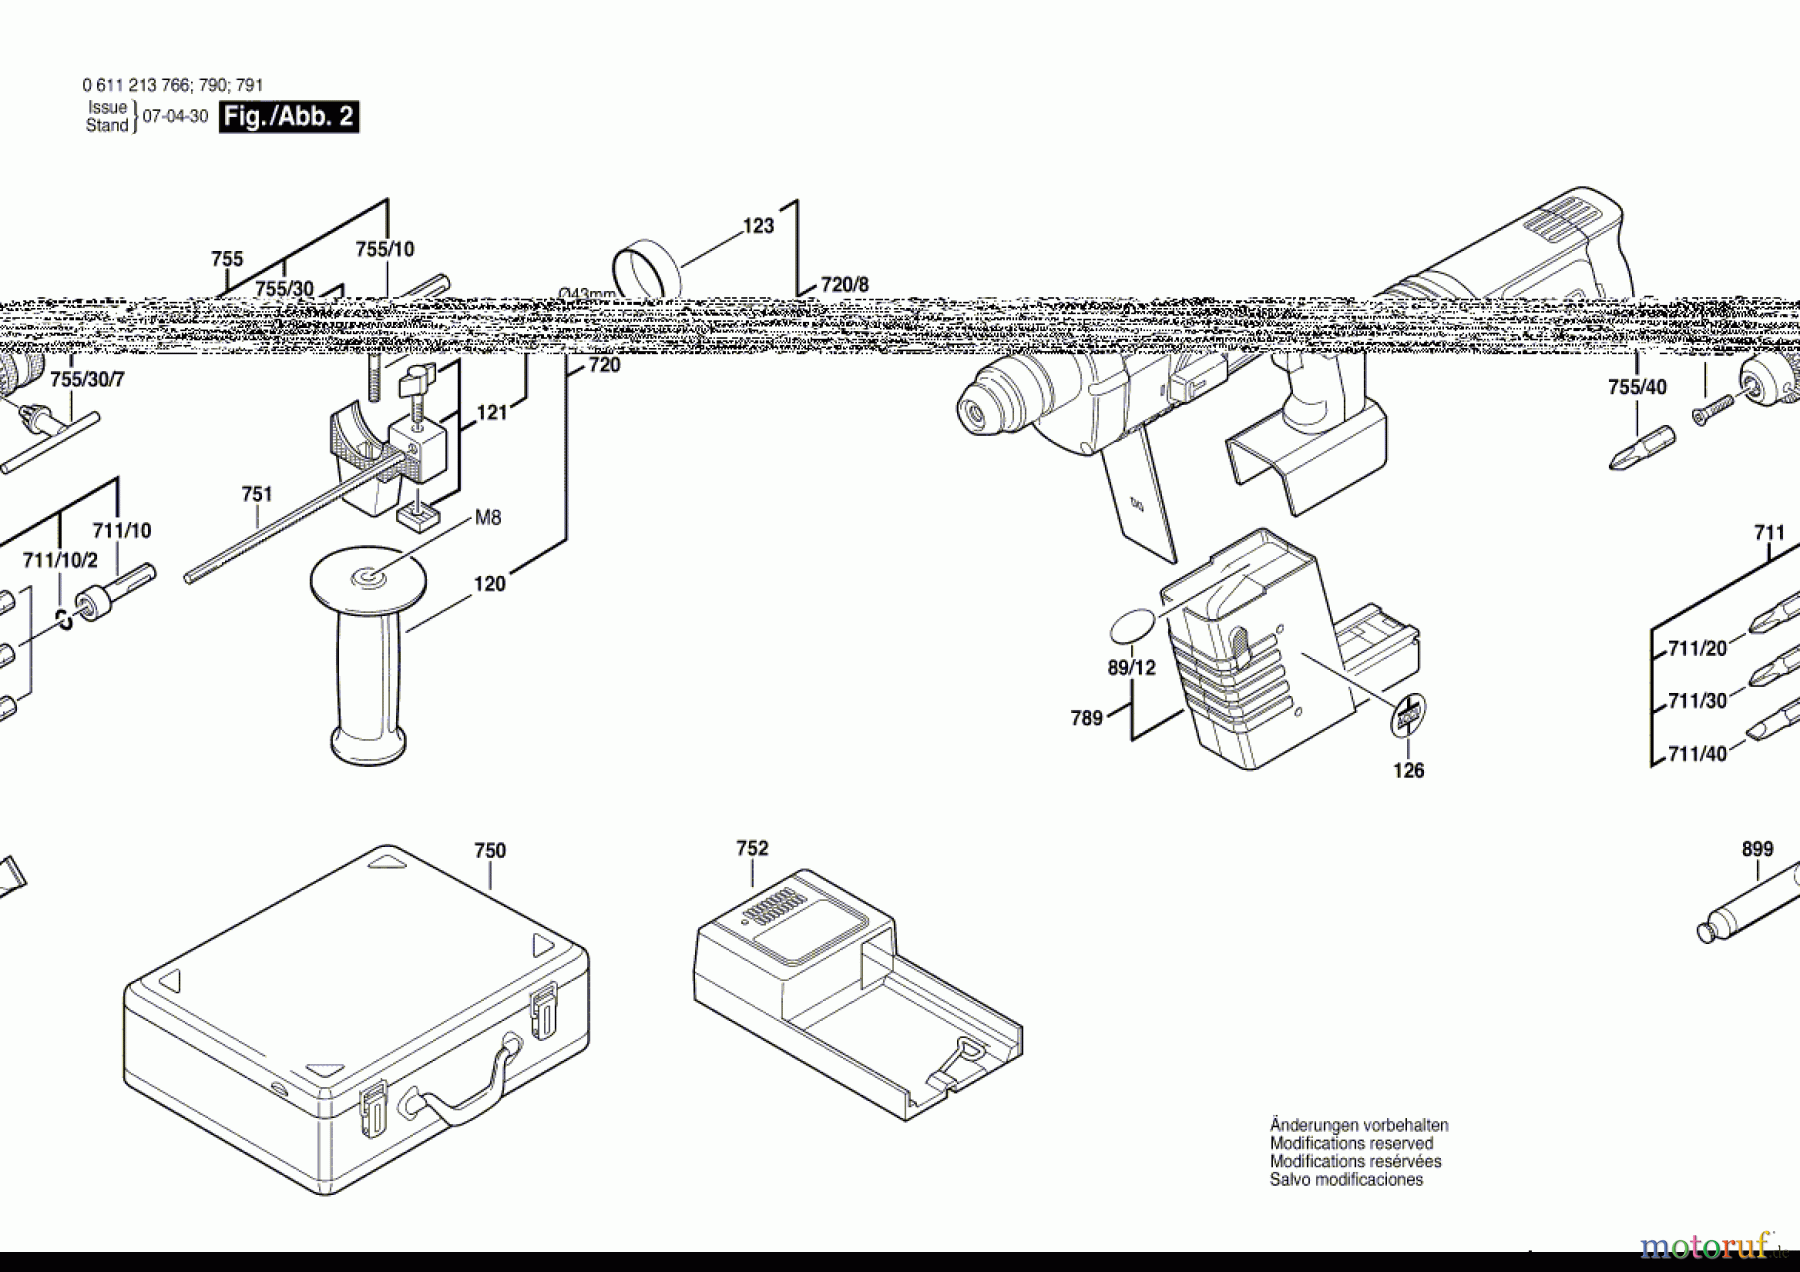  Bosch Akku Werkzeug Gw-Akku-Bohrhammer BRL 524 VE Seite 2